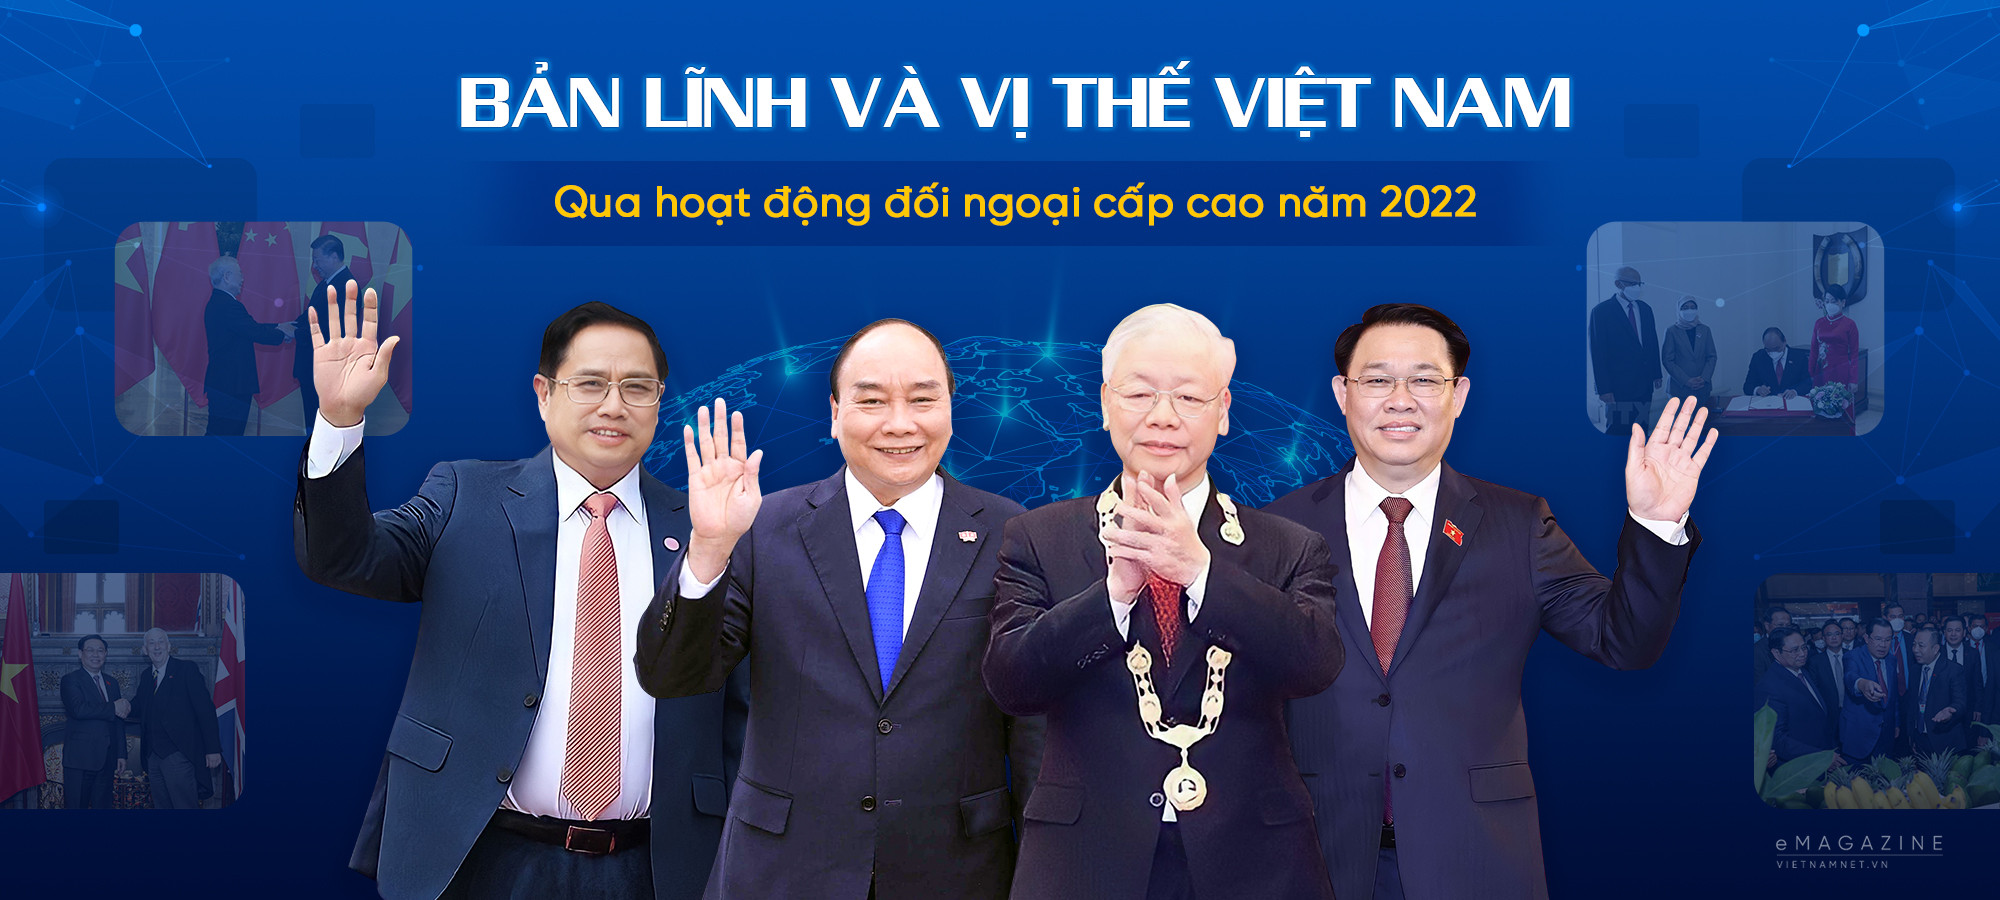 Bản lĩnh và vị thế Việt Nam qua hoạt động đối ngoại cấp cao năm 2022